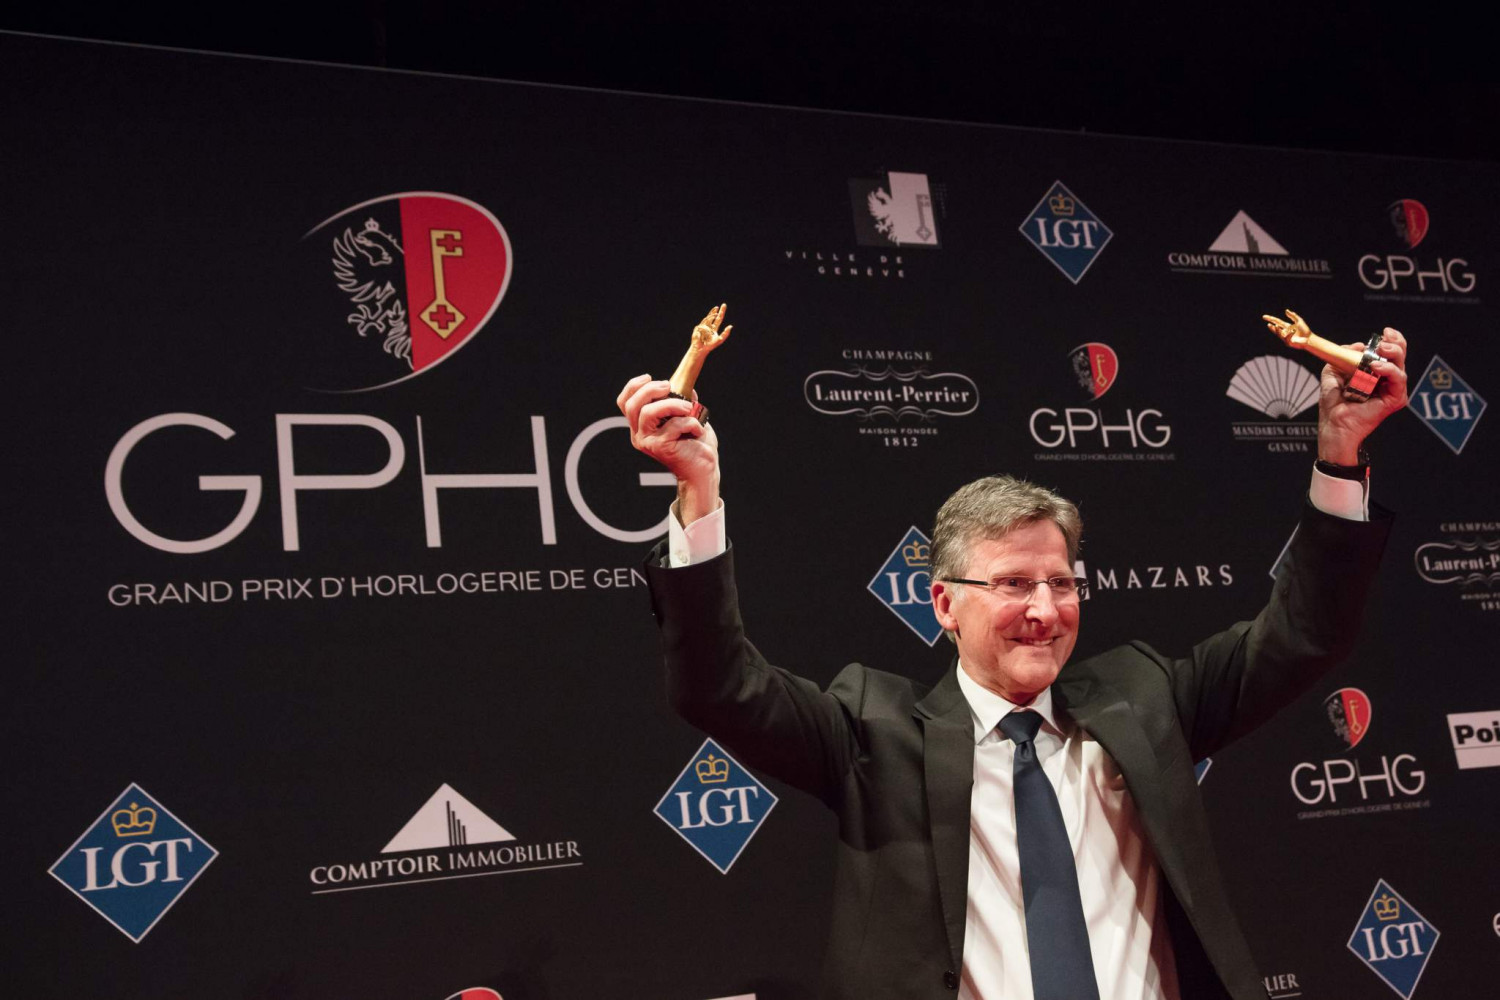 Michel Parmigiani at the GPHG 2017